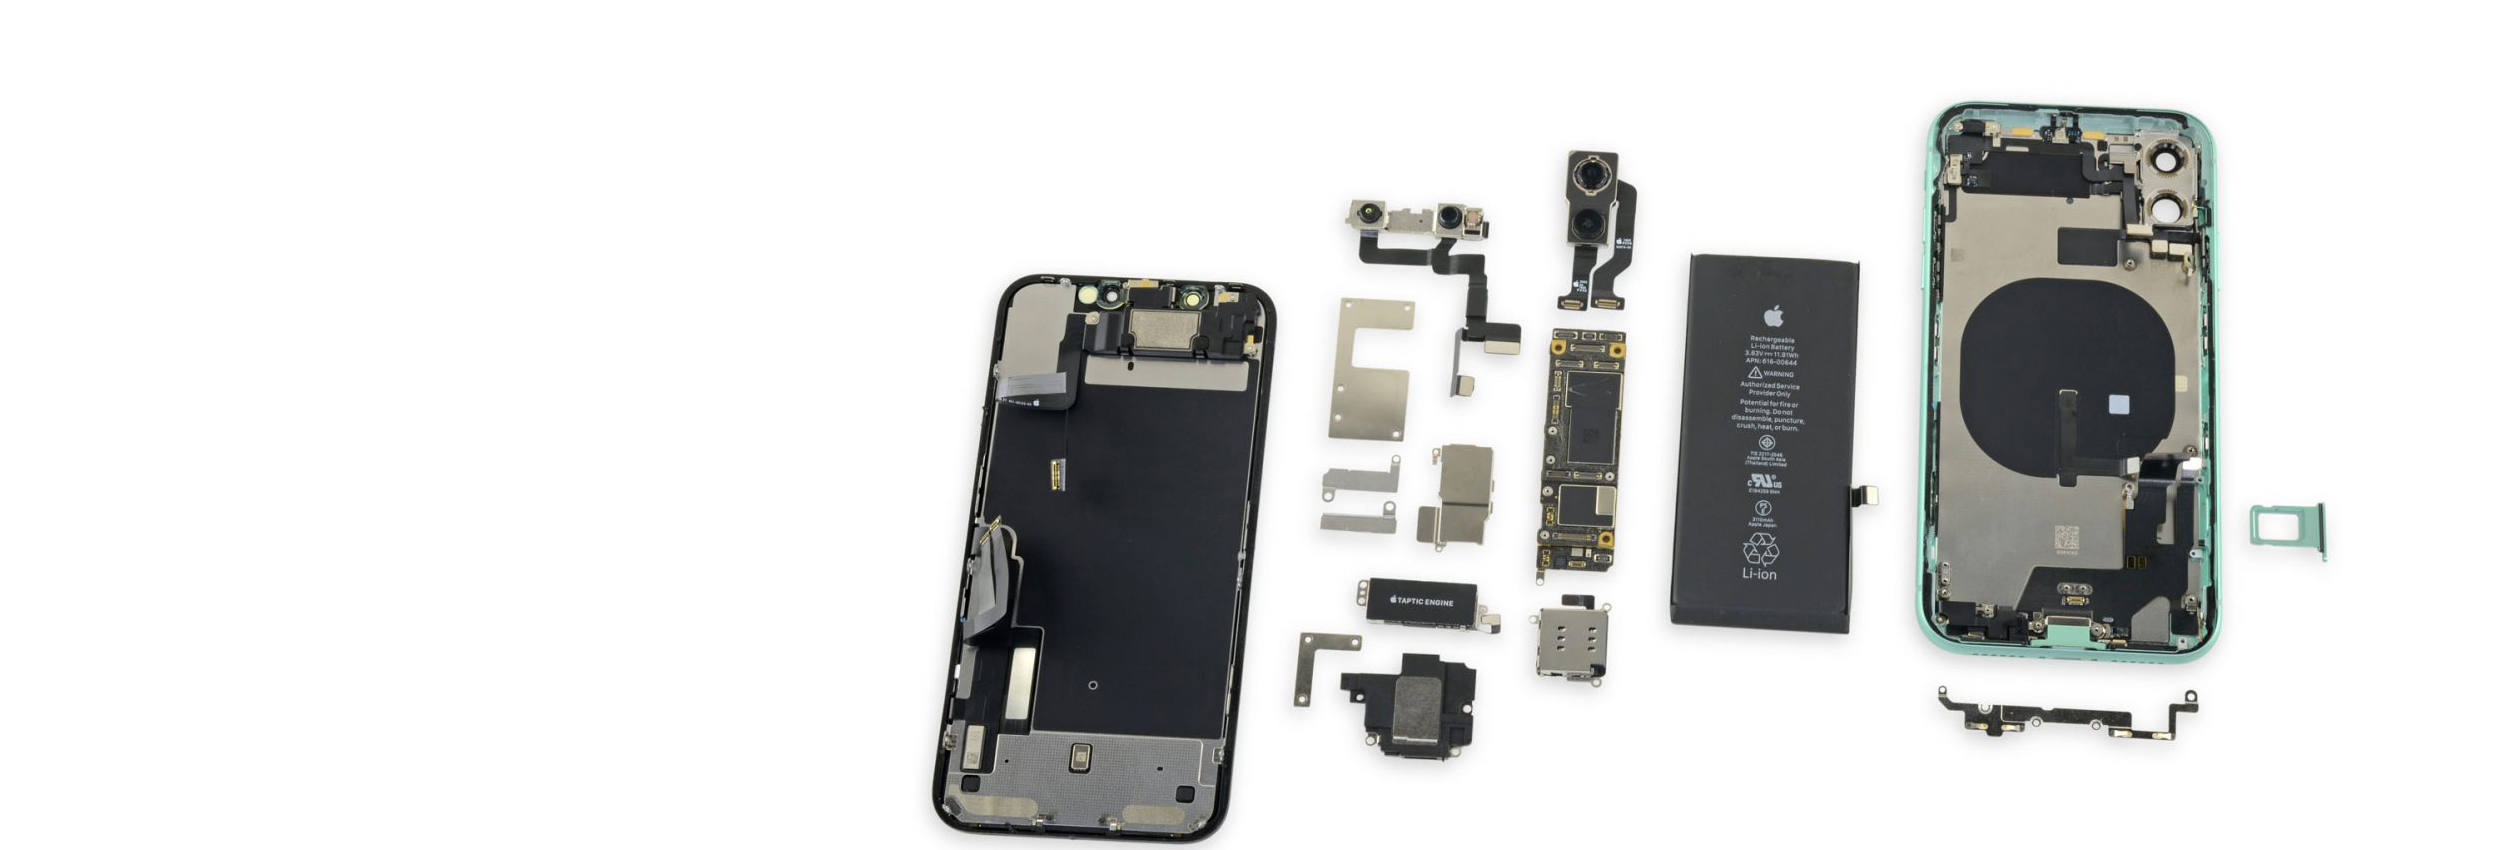 iPhone cep telefonu tamiri, ekran ve cam değişimi servisi